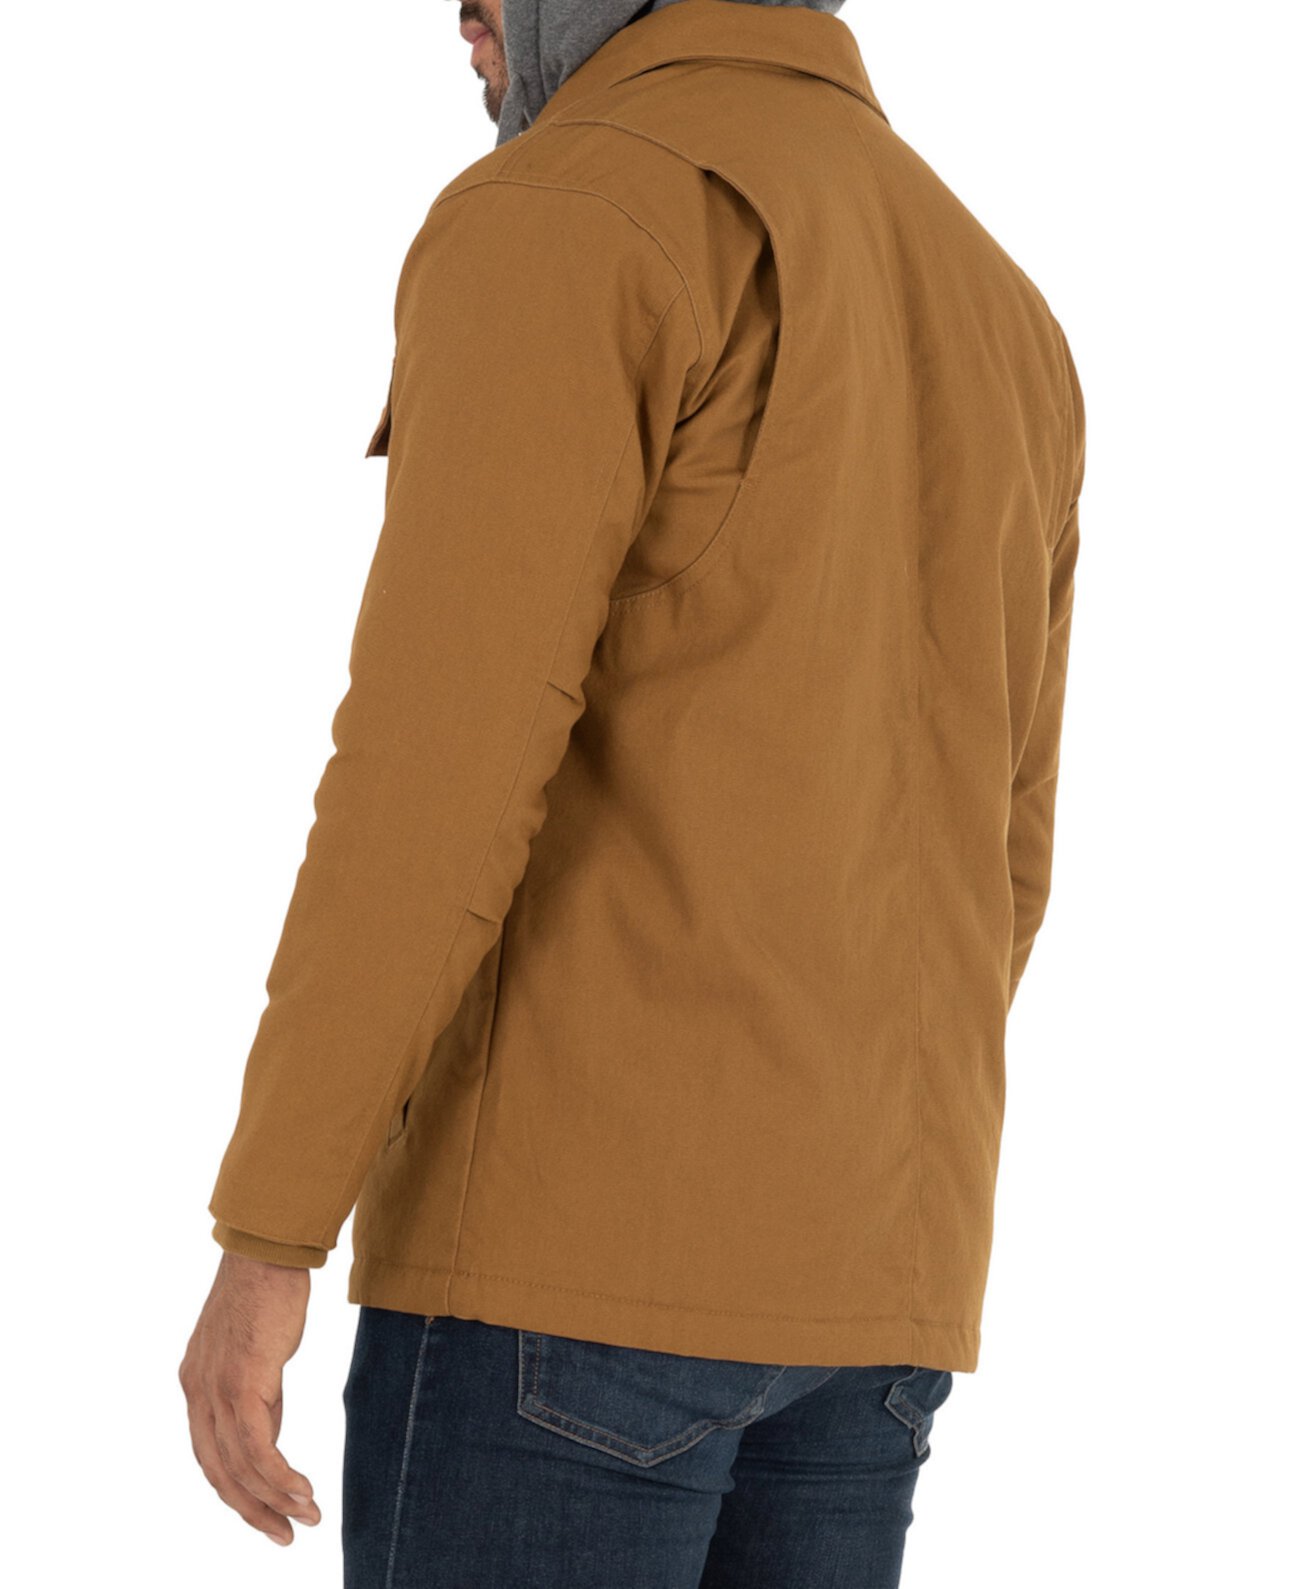 Мужская куртка-рубашка из мягкой ткани на стеганой подкладке с флисовым капюшоном на подкладке из шерпы Wells Lamont